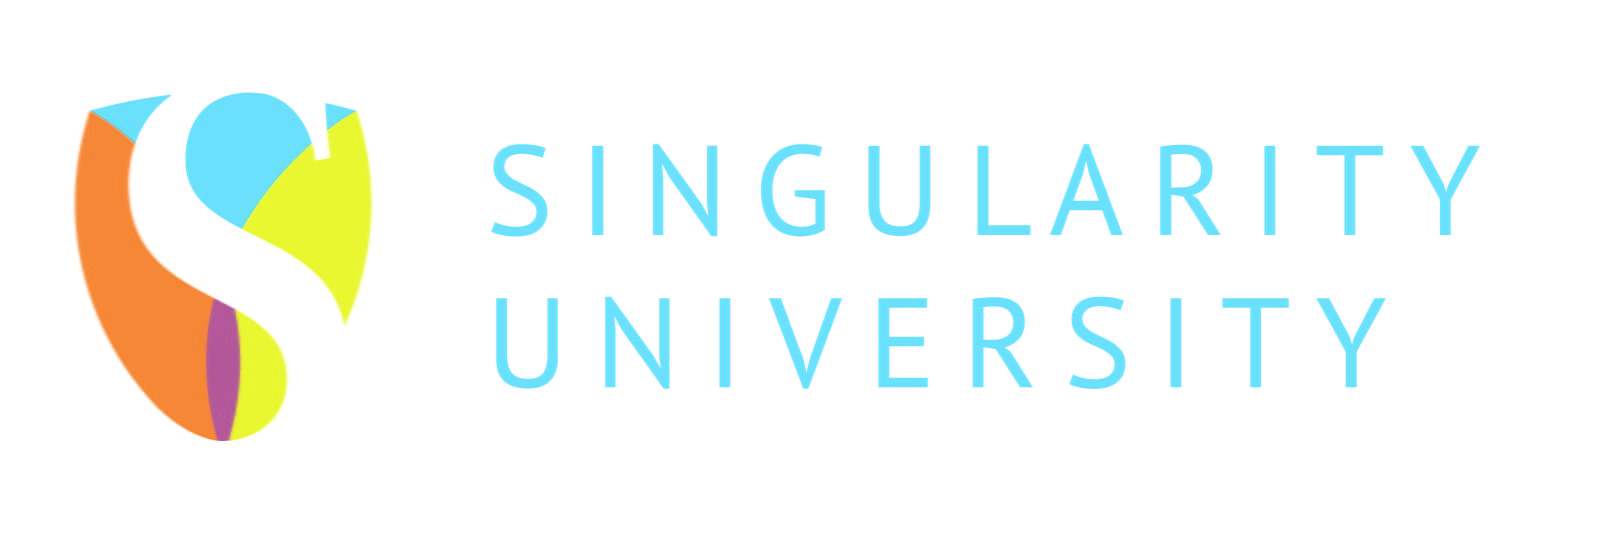 La Singularity University, qu’est-ce que c’est ?